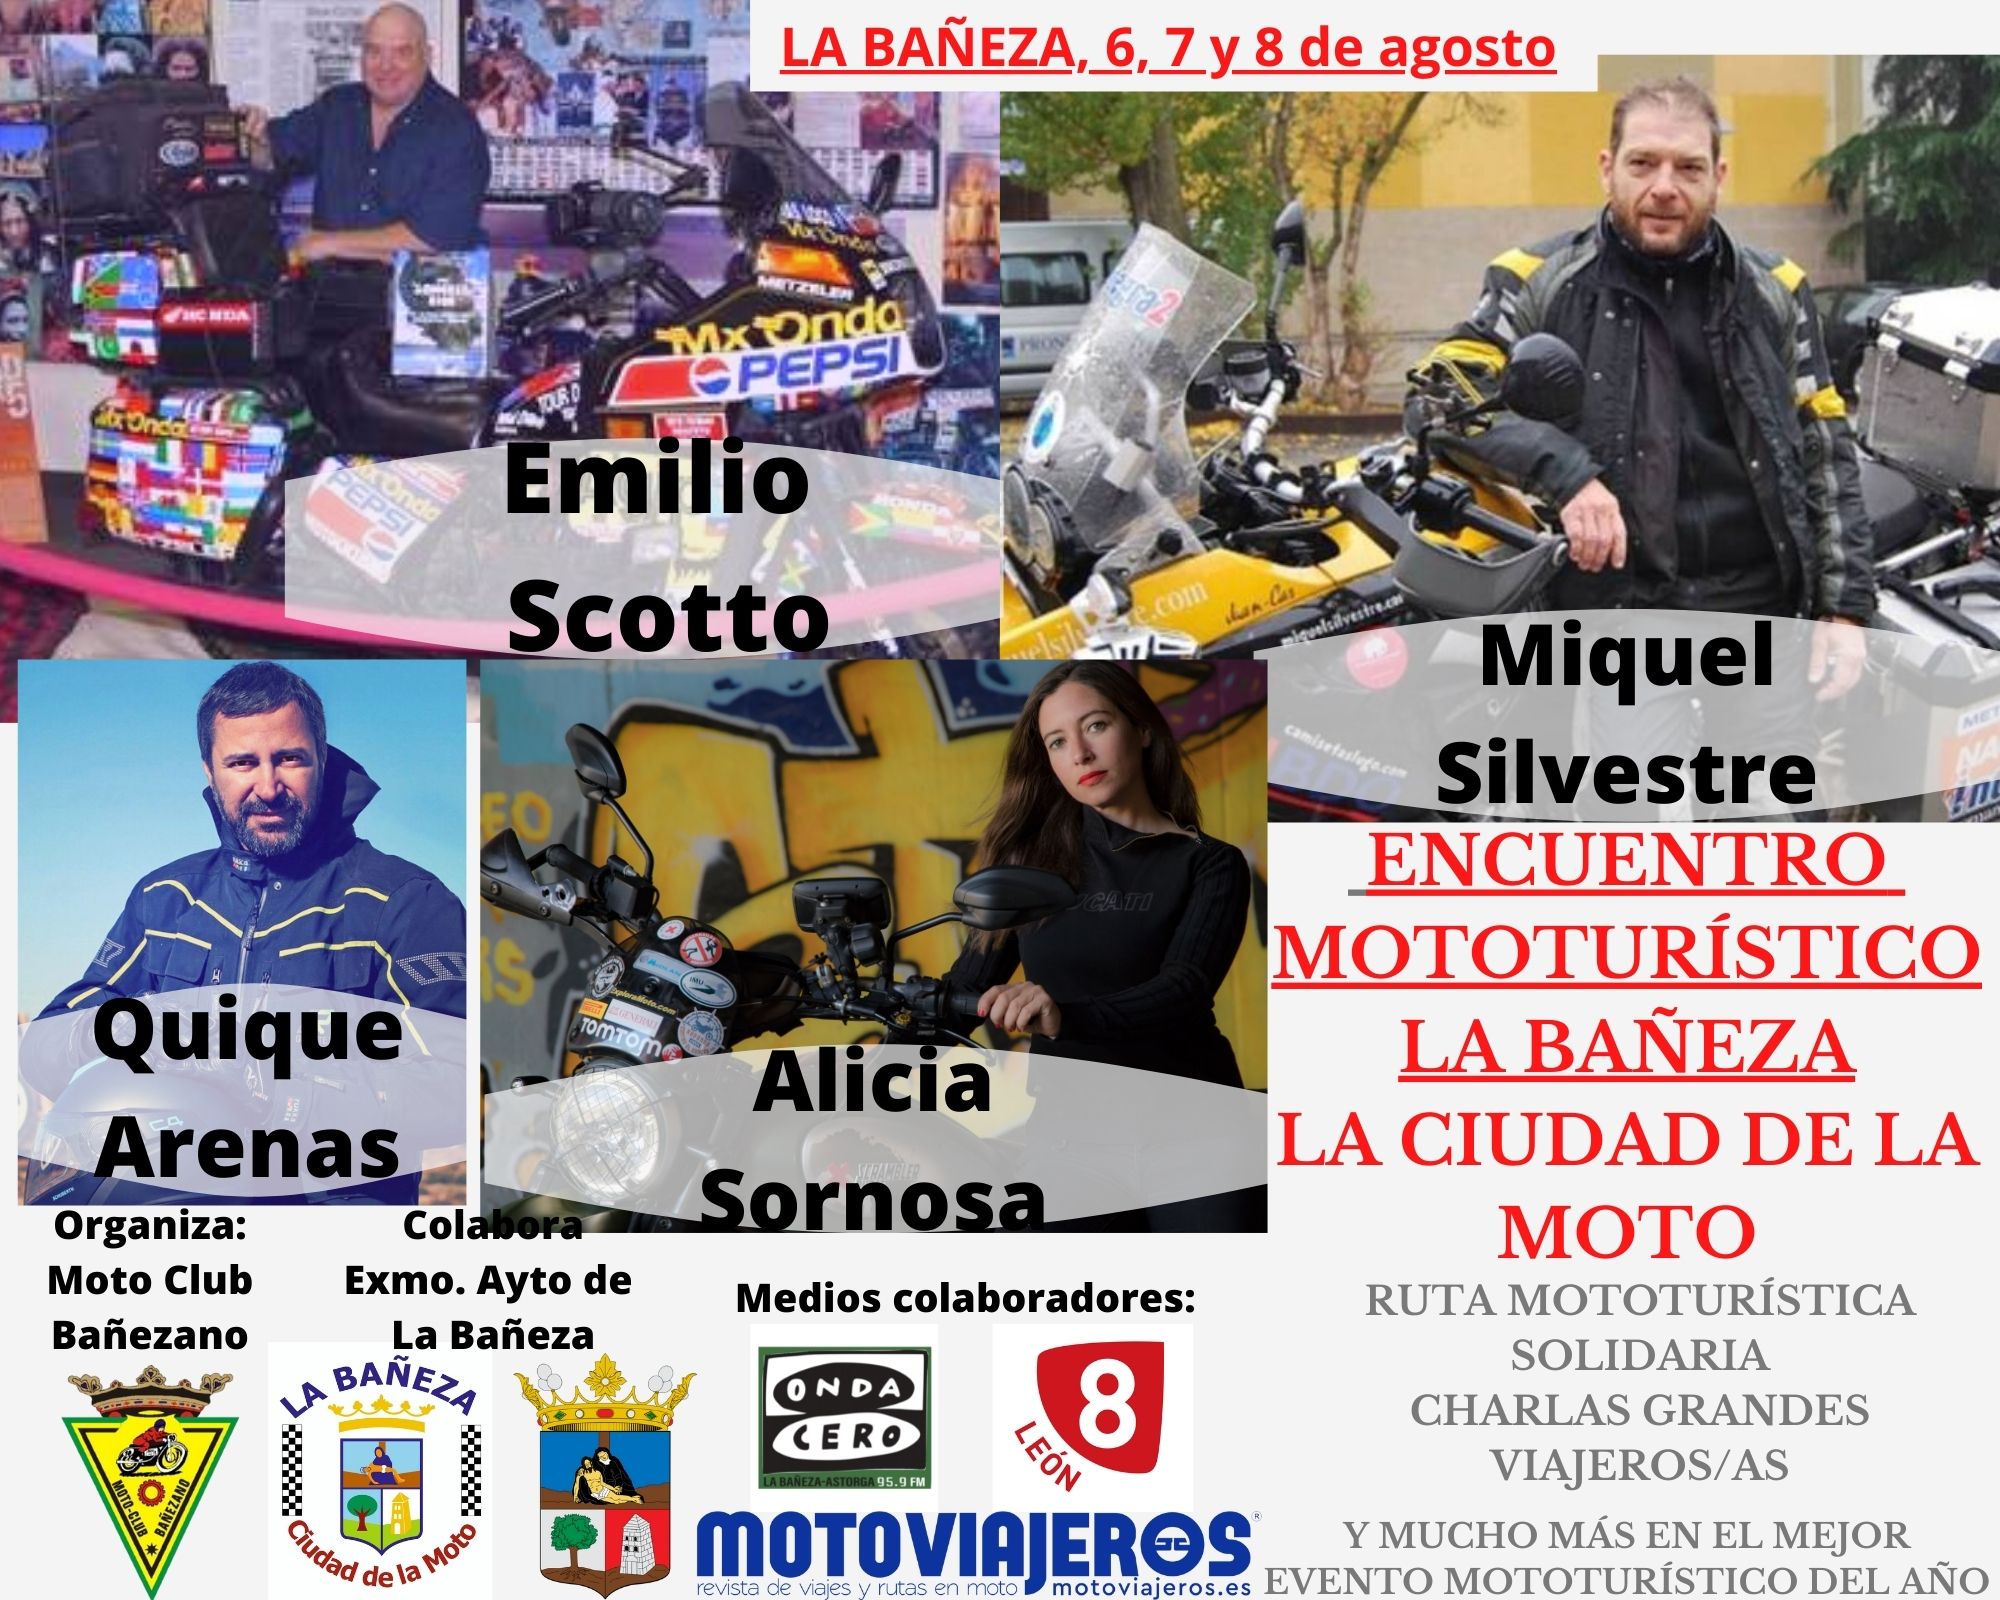 Encuentro Mototurístico La Bañeza, La Ciudad de la Moto